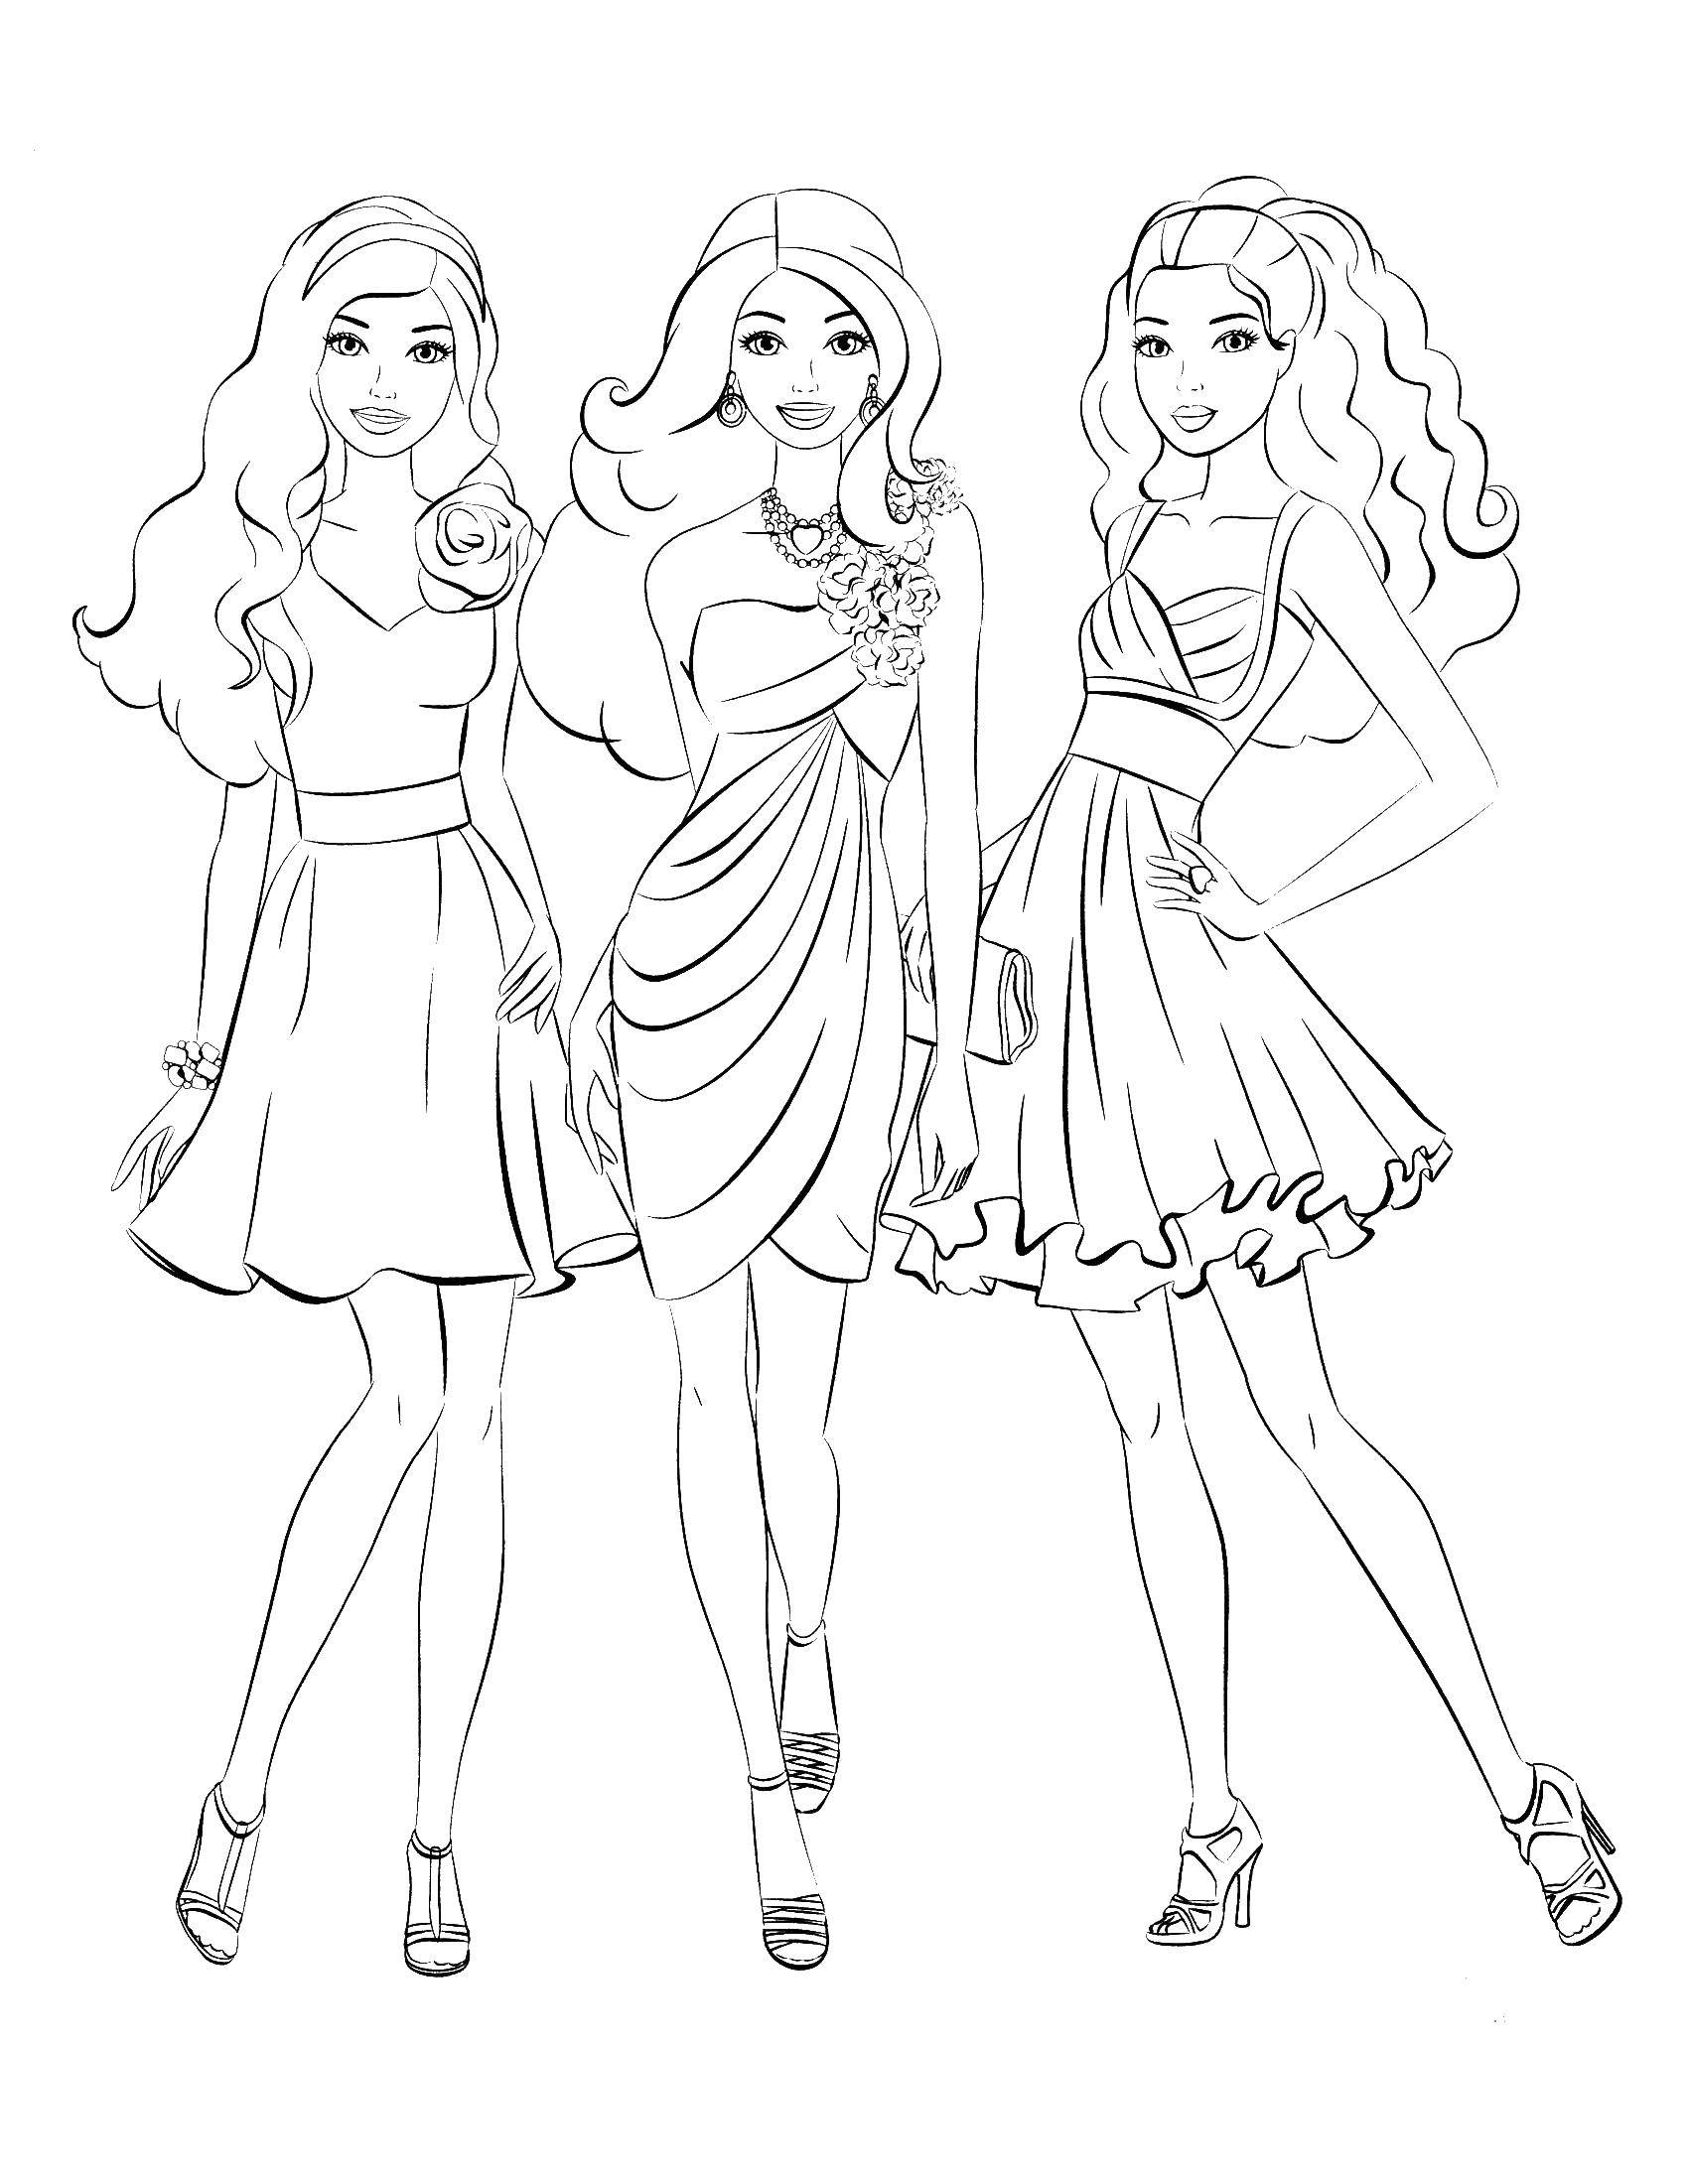 Розмальовки  Три барбі в танцювальних сукнях. Завантажити розмальовку барбі, плаття, дівчата.  Роздрукувати ,Барбі,